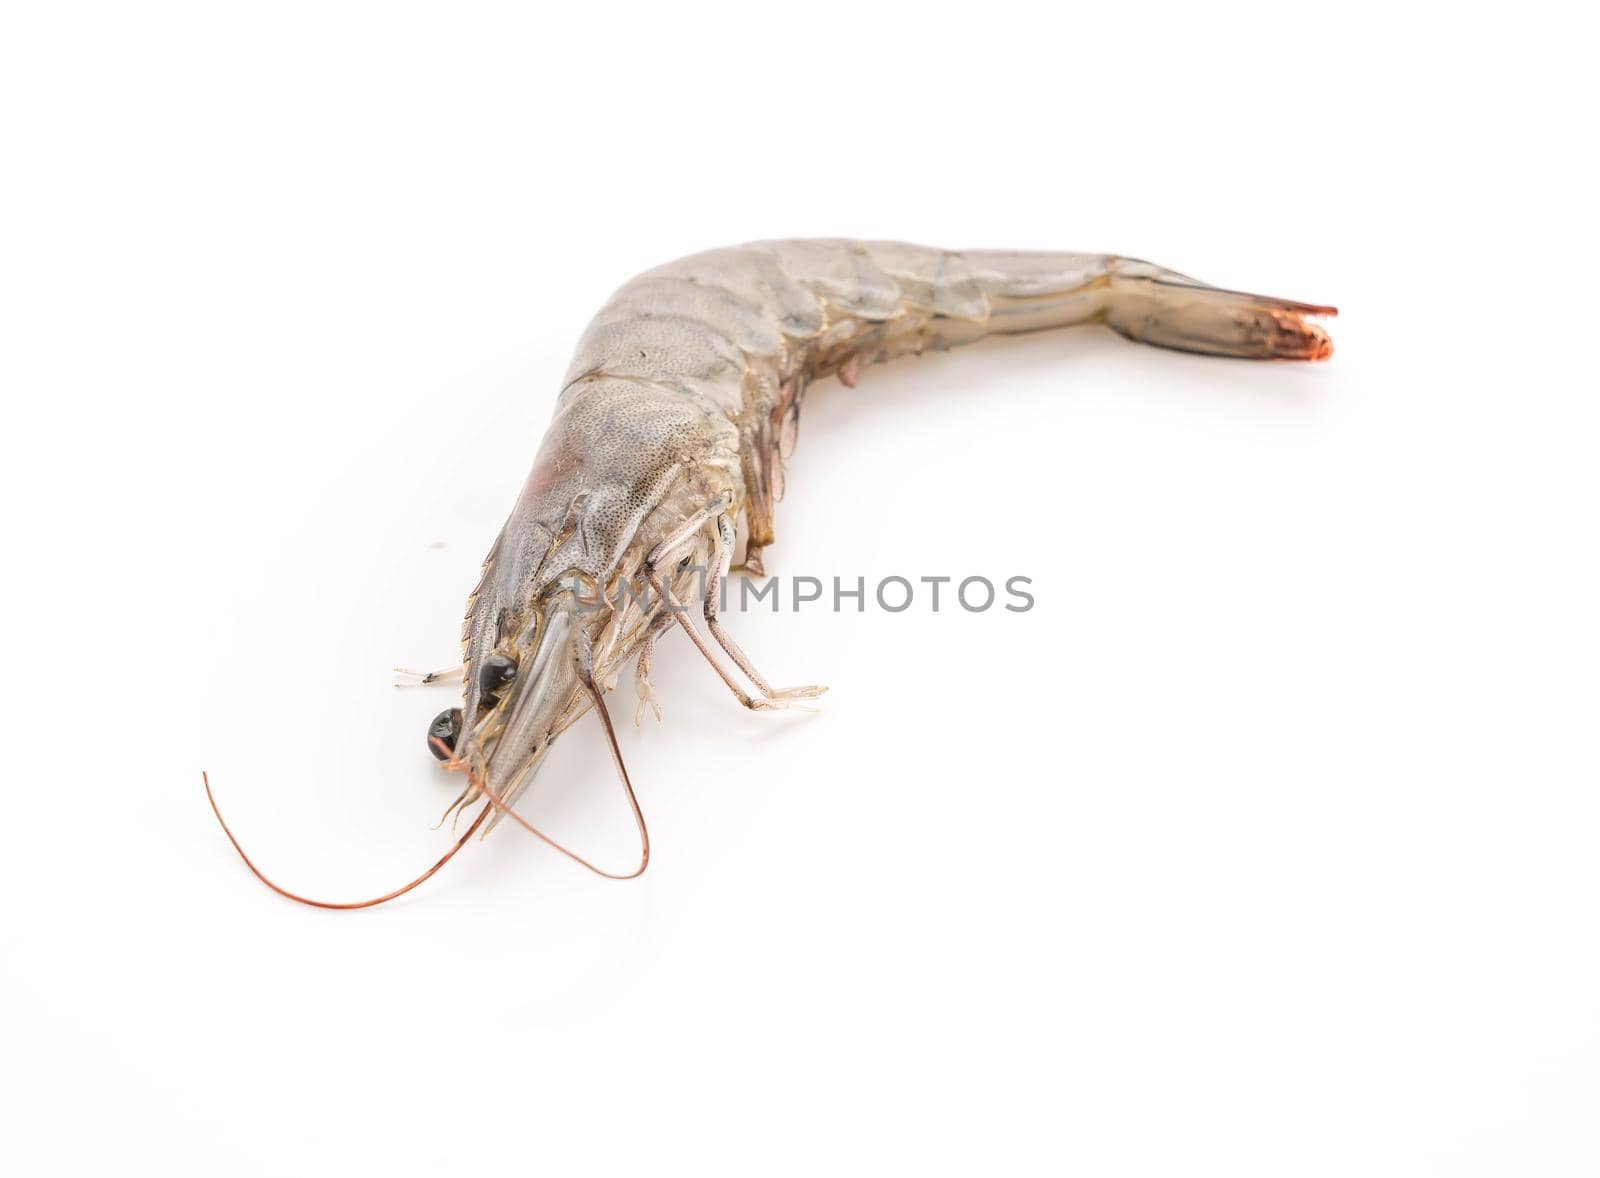 fresh shrimp/prawn by mihavincadani